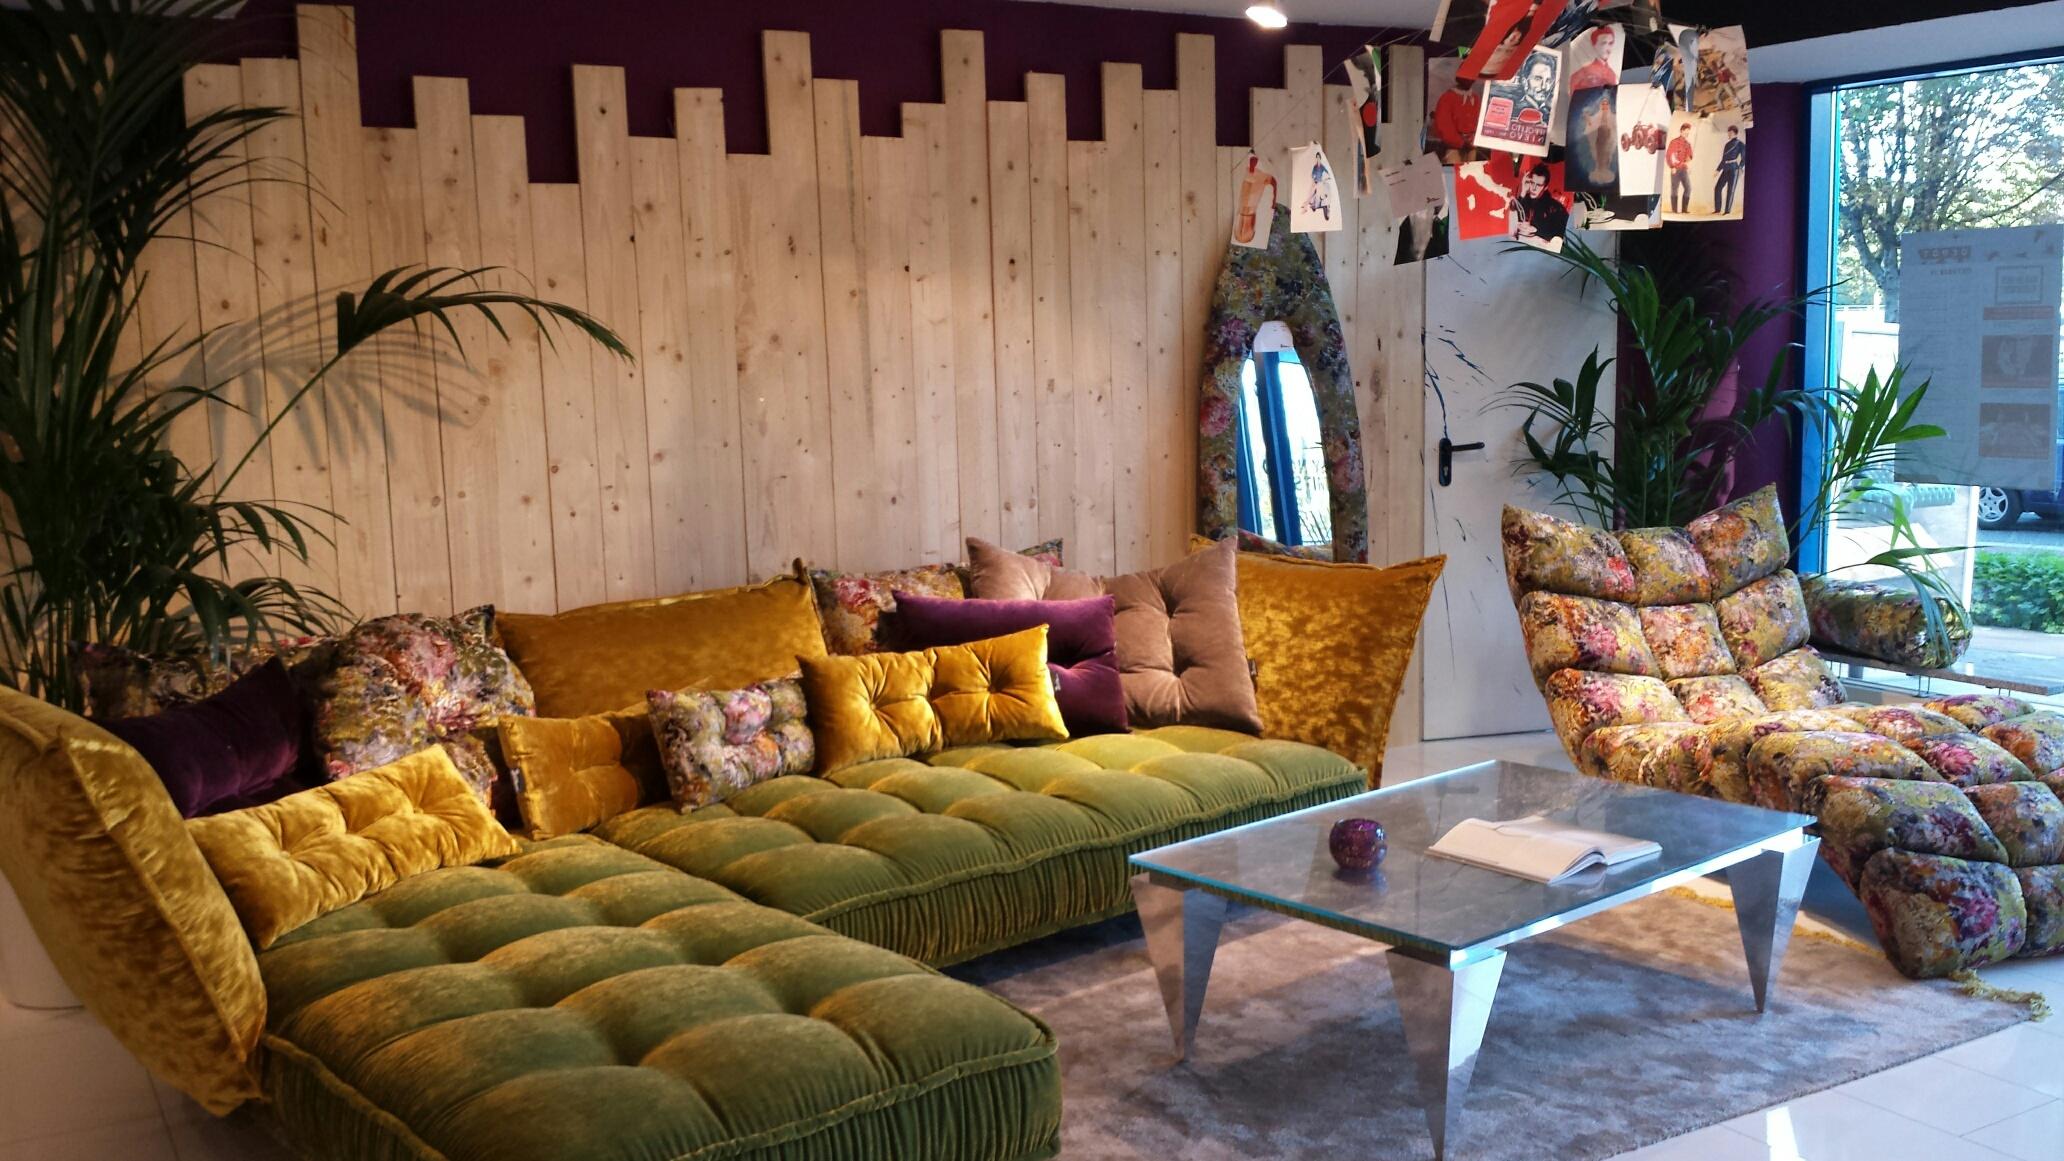 Ohlinda Sofa #sofa ©Bretz Store Dortmund